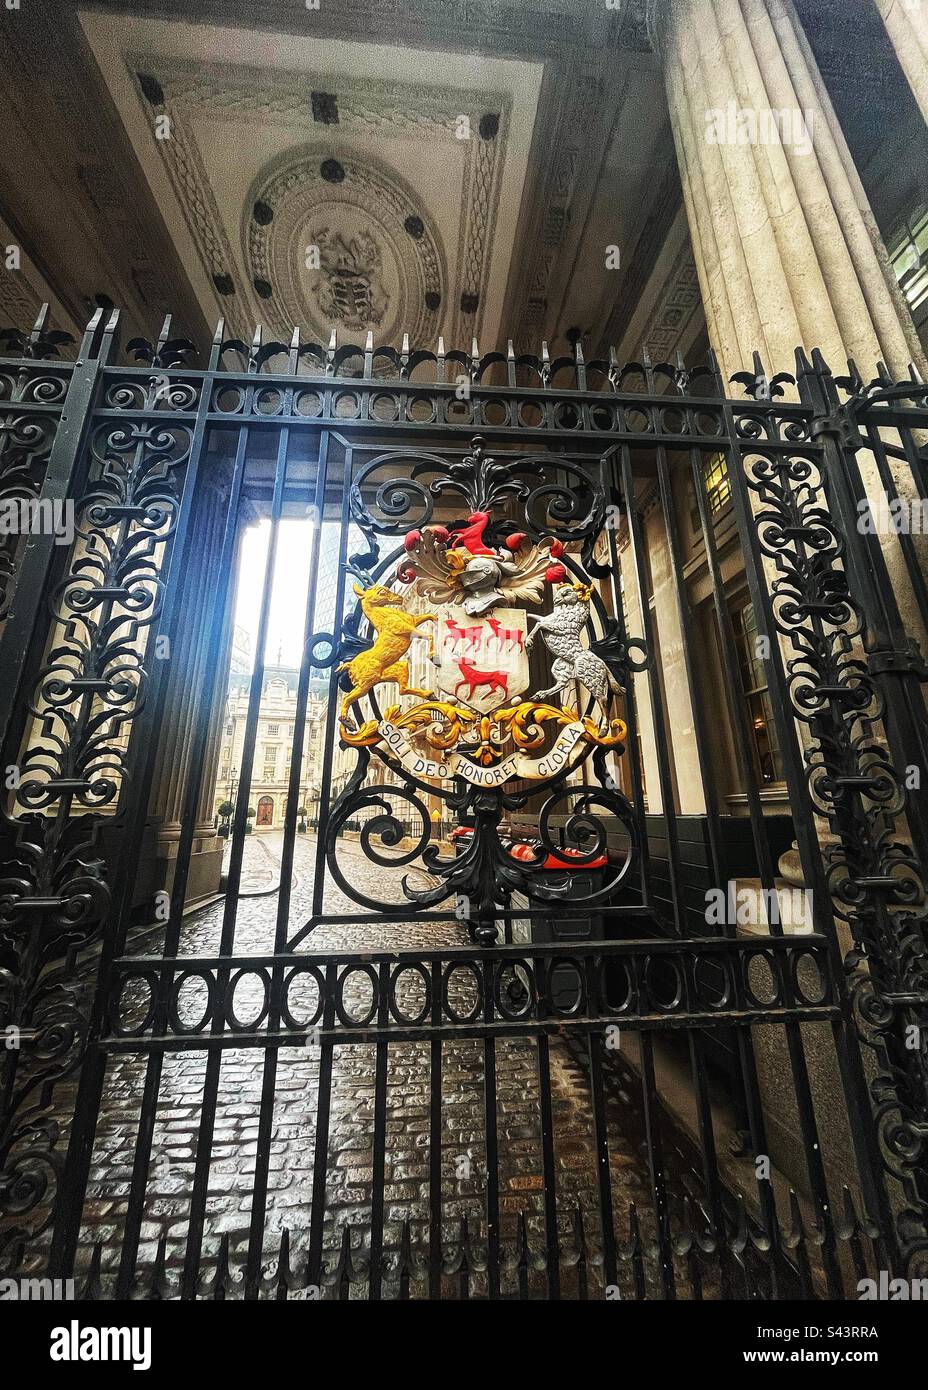 The Leathersellers’ Company - una società di livrea - situata al 7 di St Helen’s Place, Londra. Il loro cancello porta uno stemma ed è chiuso. Foto Stock